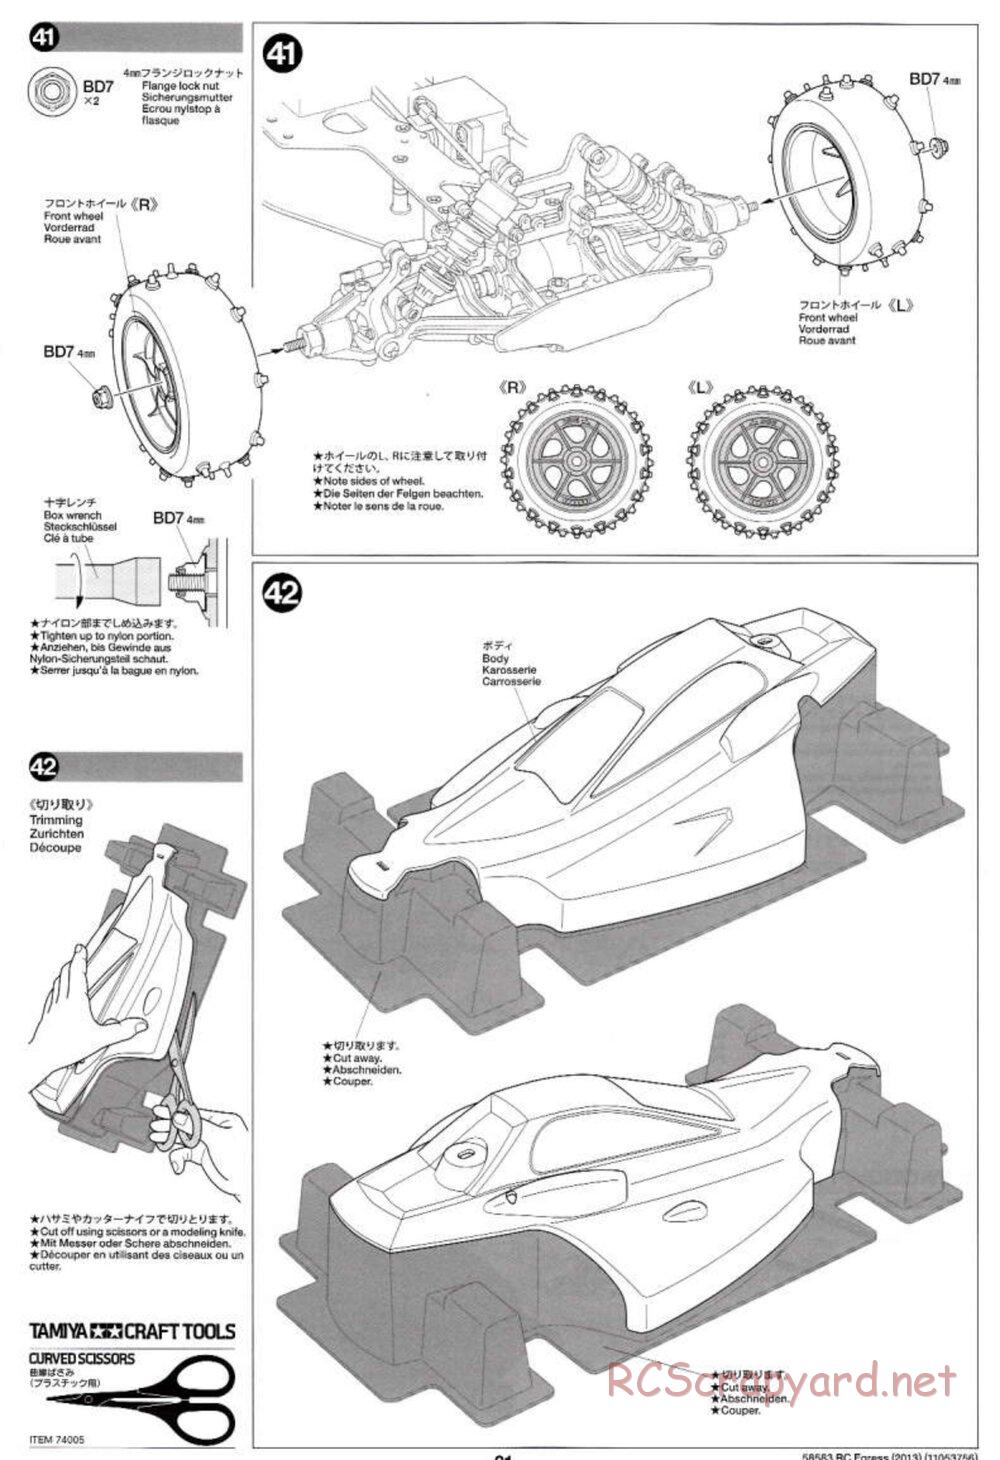 Tamiya - Egress 2013 - AV Chassis - Manual - Page 21